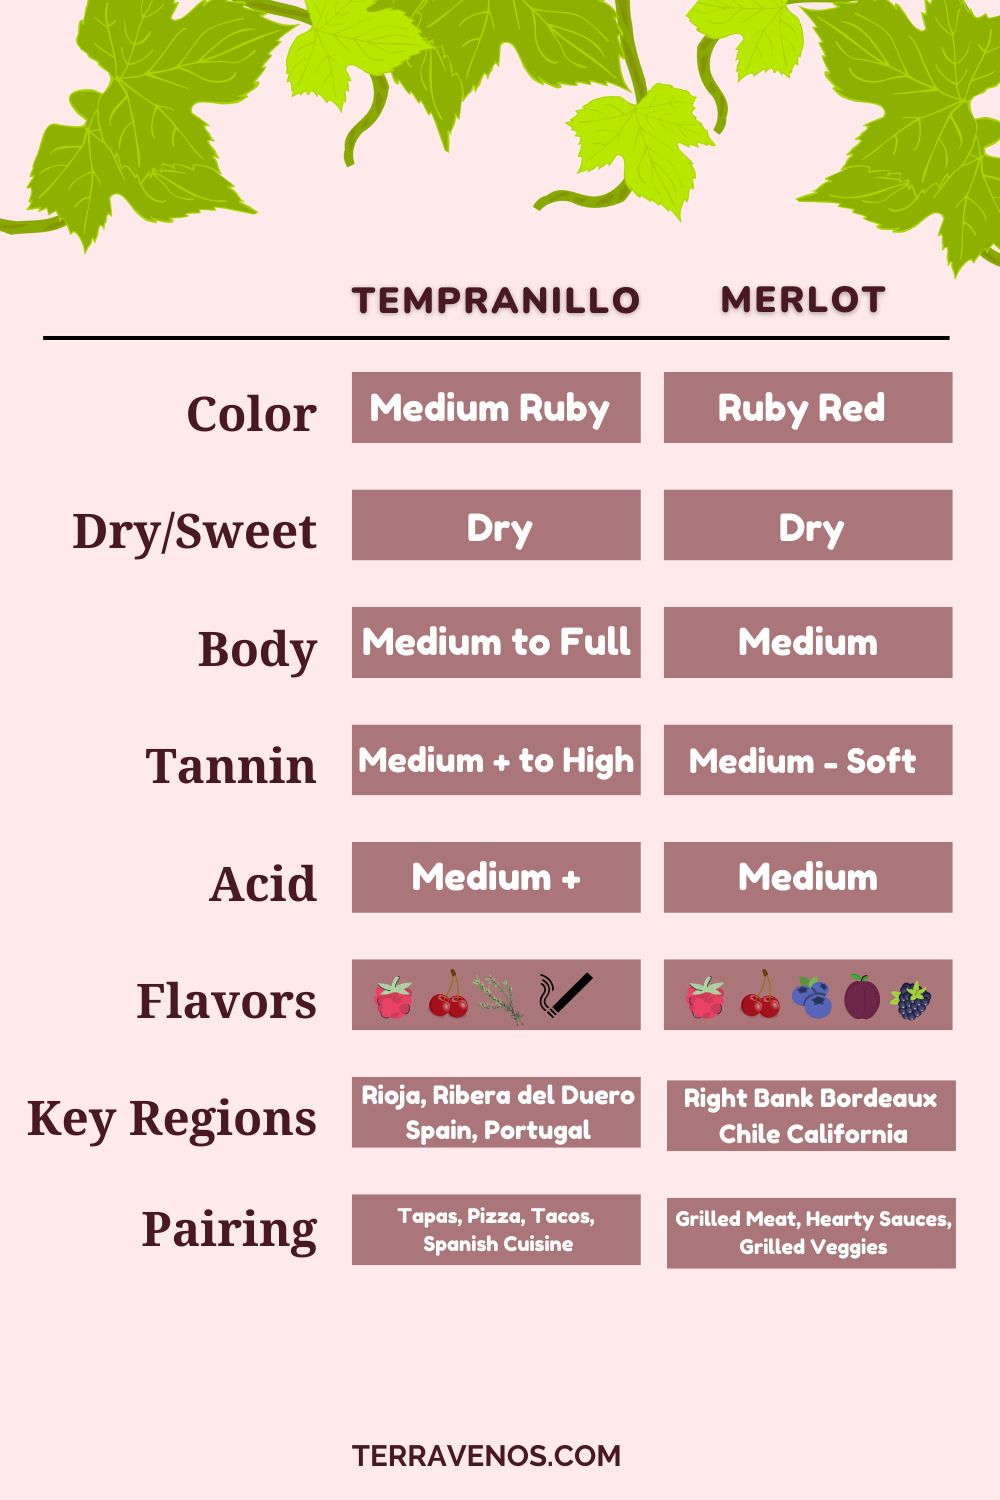 tempranillo-vs-merlot-wine-comparison-infographic